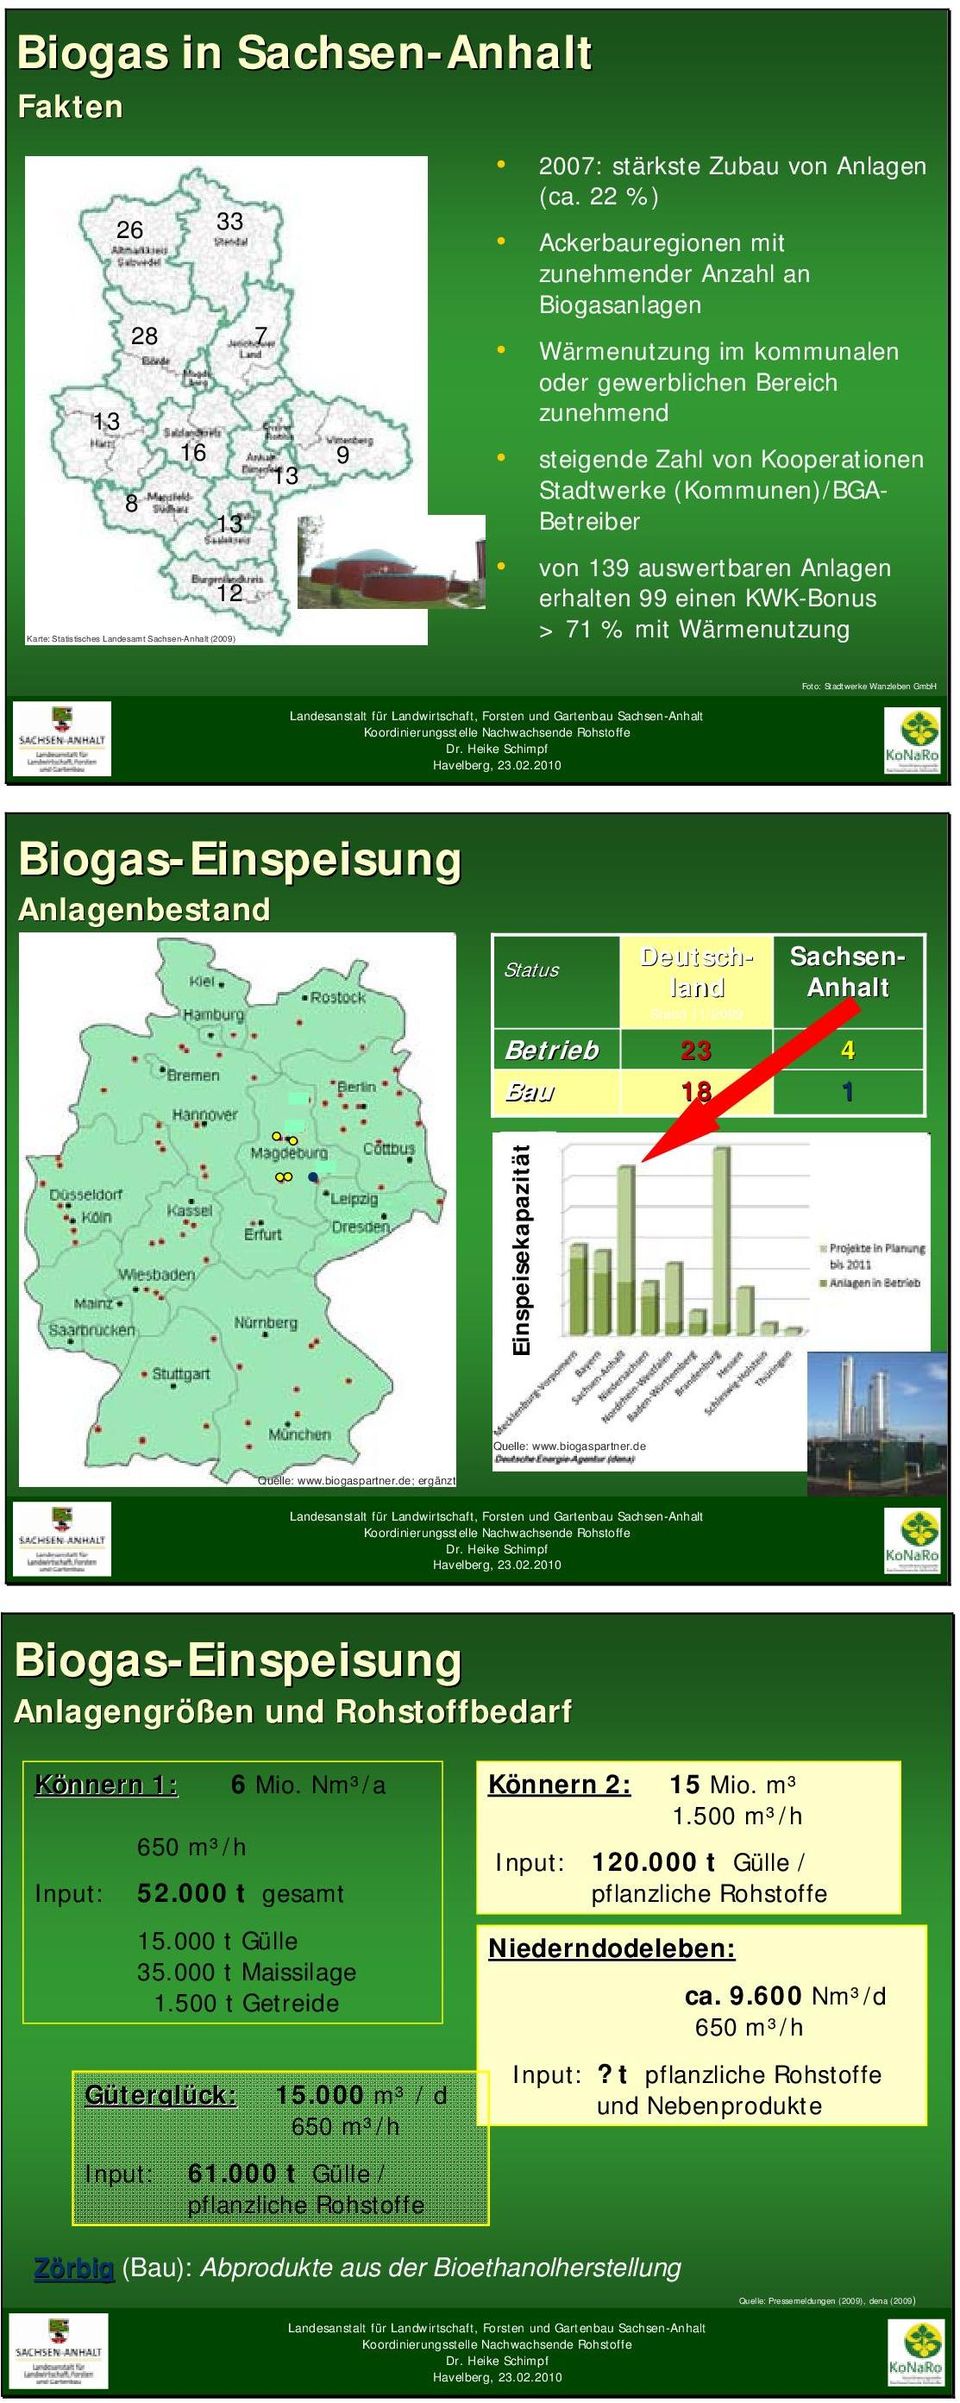 9 auswertbaren Anlagen erhalten 99 einen KWK-Bonus > 71 % mit Wärmenutzung Foto: Stadtwerke Wanzleben GmbH Biogas-Einspeisung Anlagenbestand Status Stand 11/29 Deutsch- land Sachsen- Anhalt Betrieb